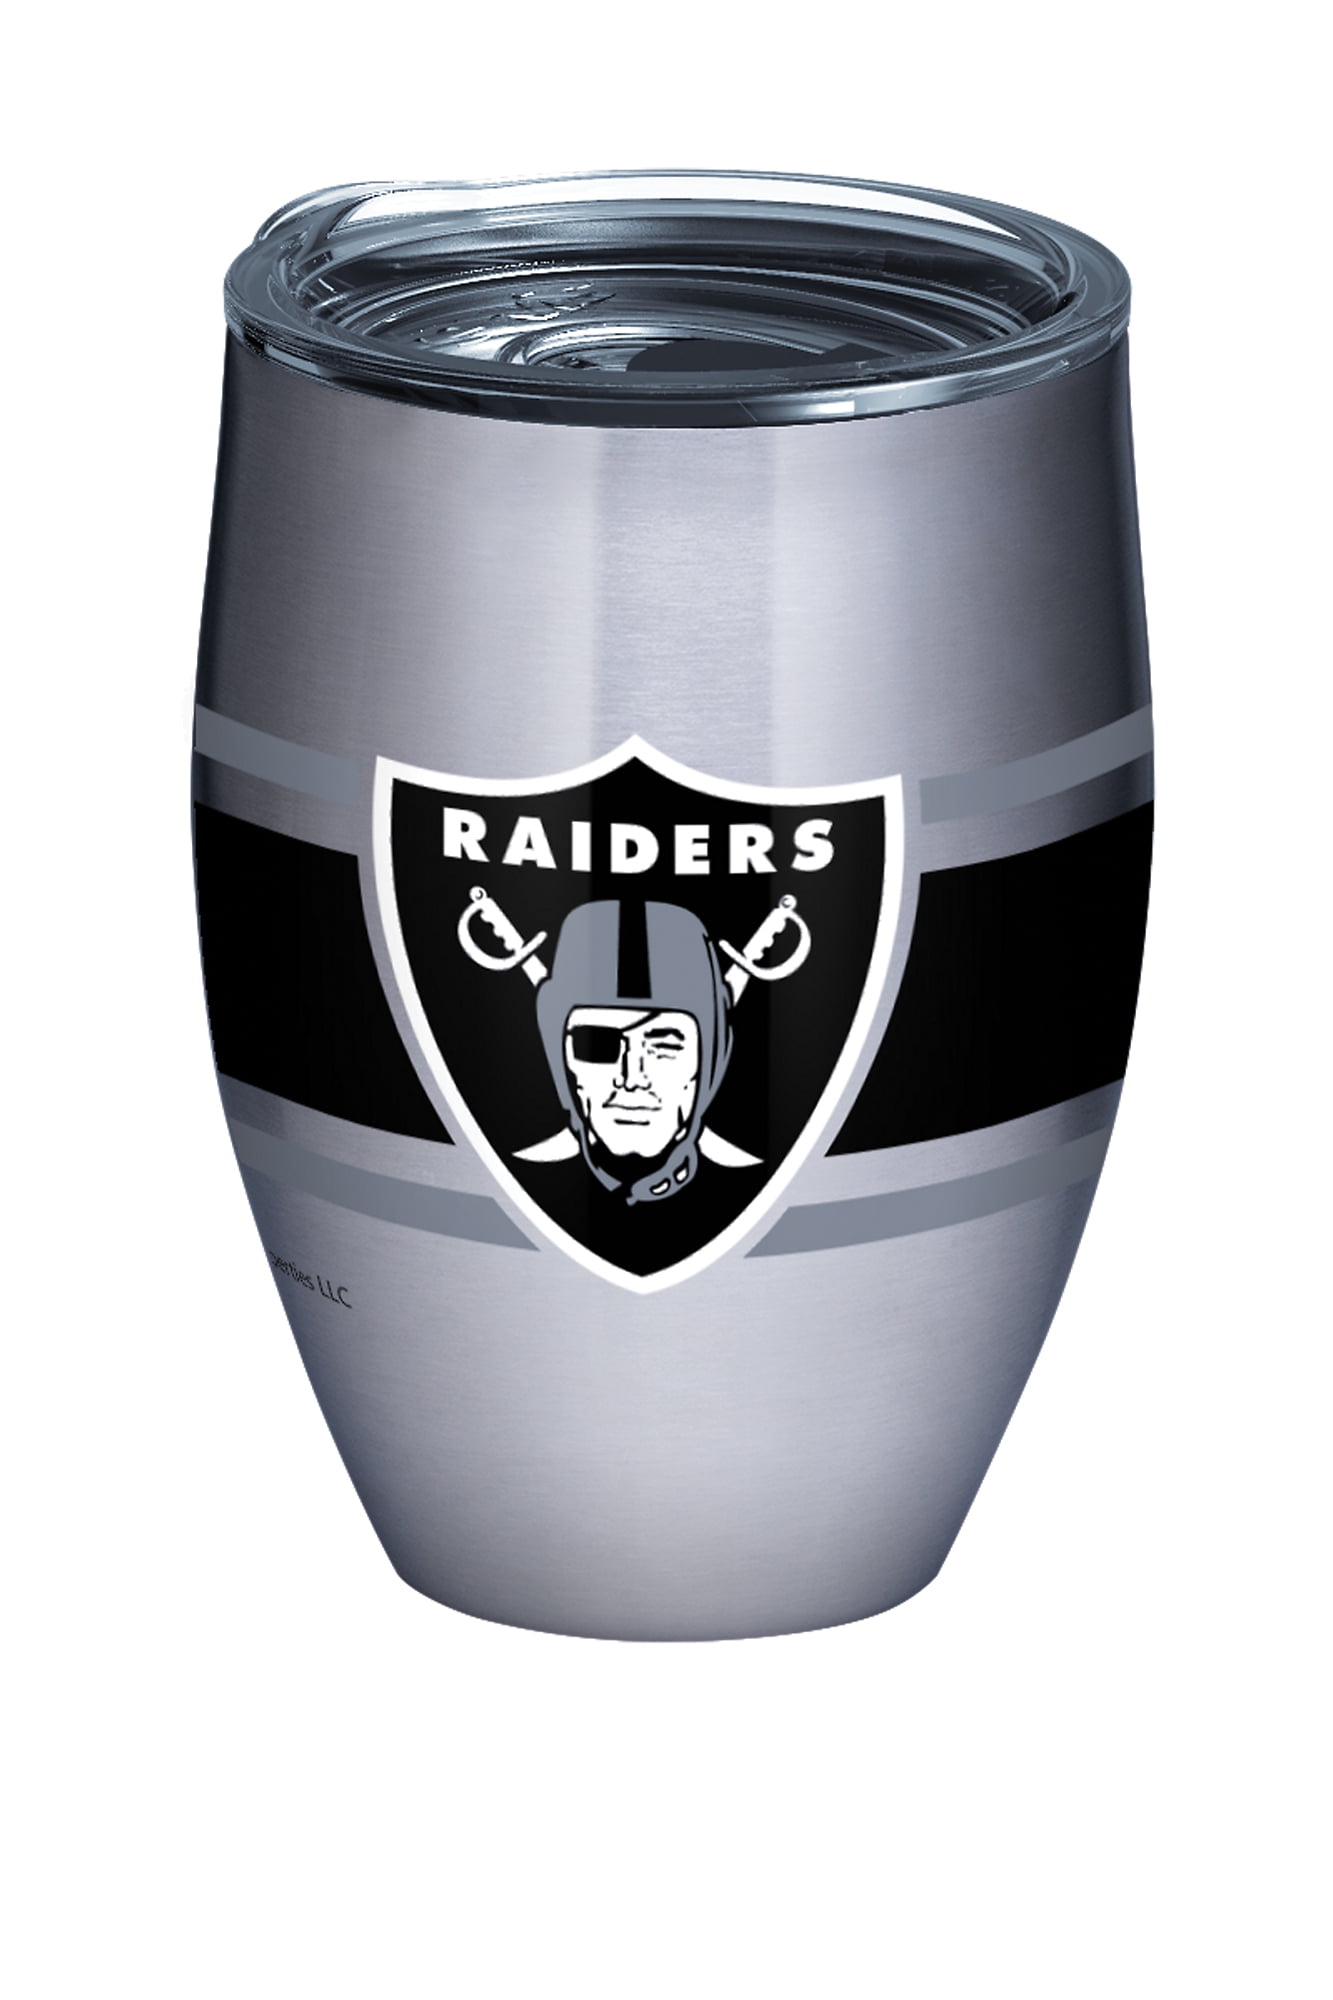 Las Vegas Raiders Football inspired 20oz stainless steel drink tumbler